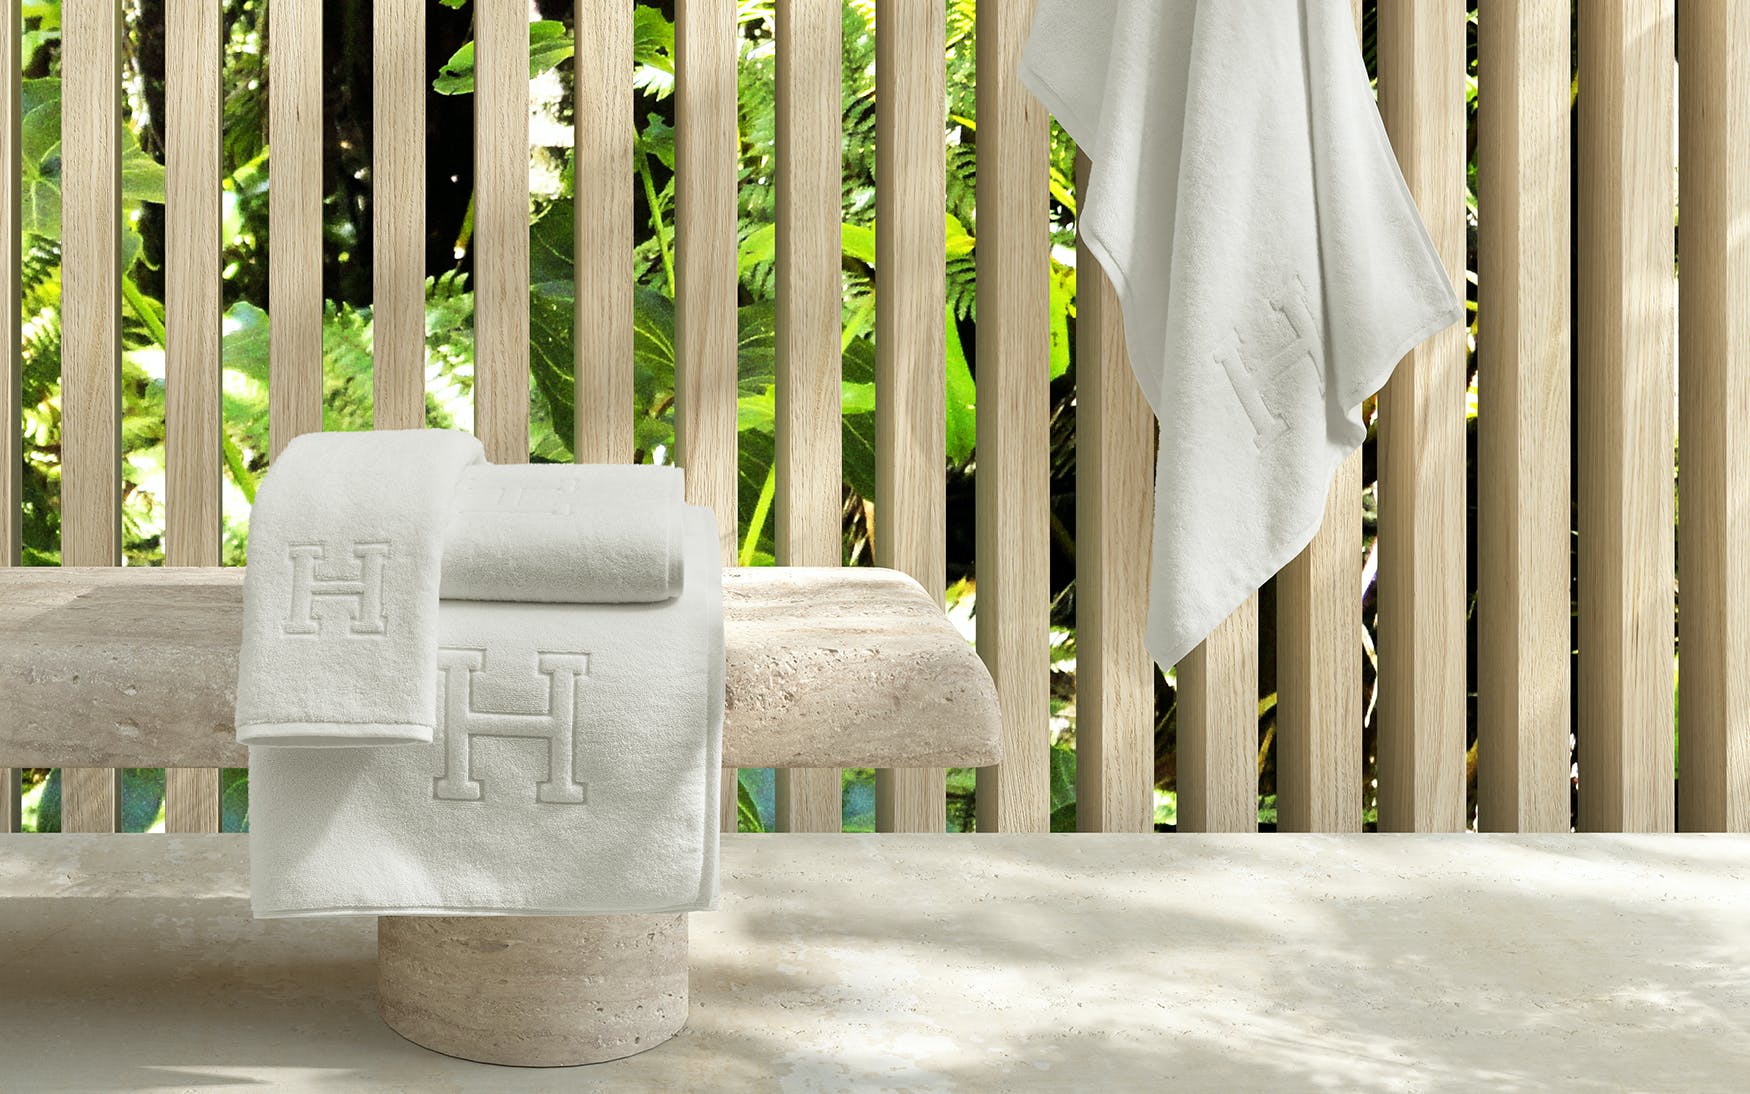 Auberge Hand Towel 20 X 32 (4 pcs) - Jabbour Linens